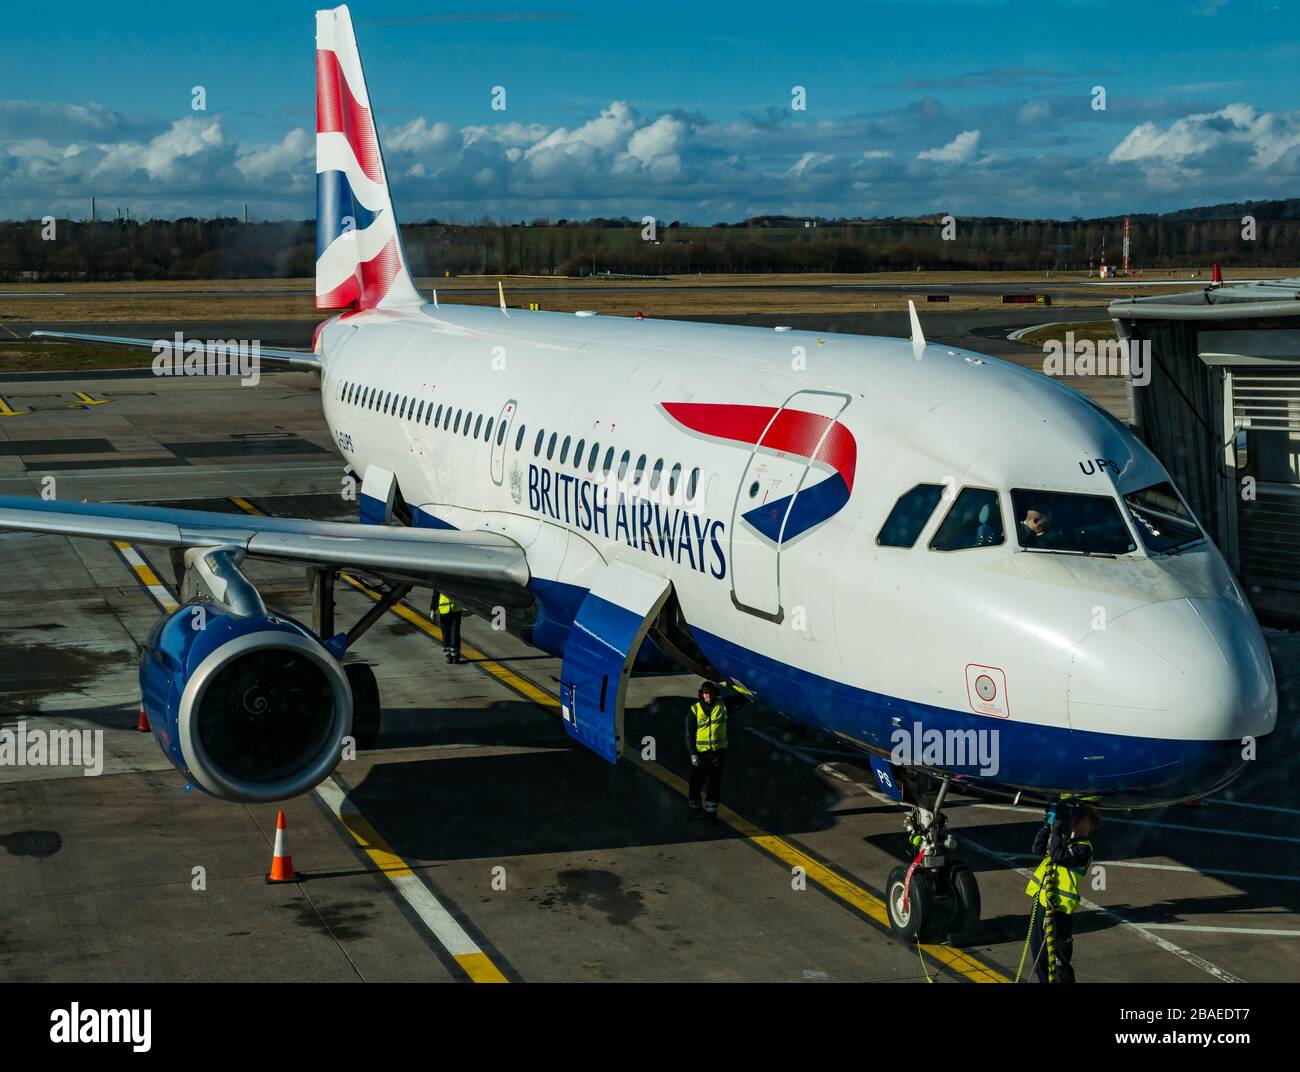 British Airways Flugzeug auf Edinburgh Airport Apron, Edinburgh, Schottland, Großbritannien Stockfoto